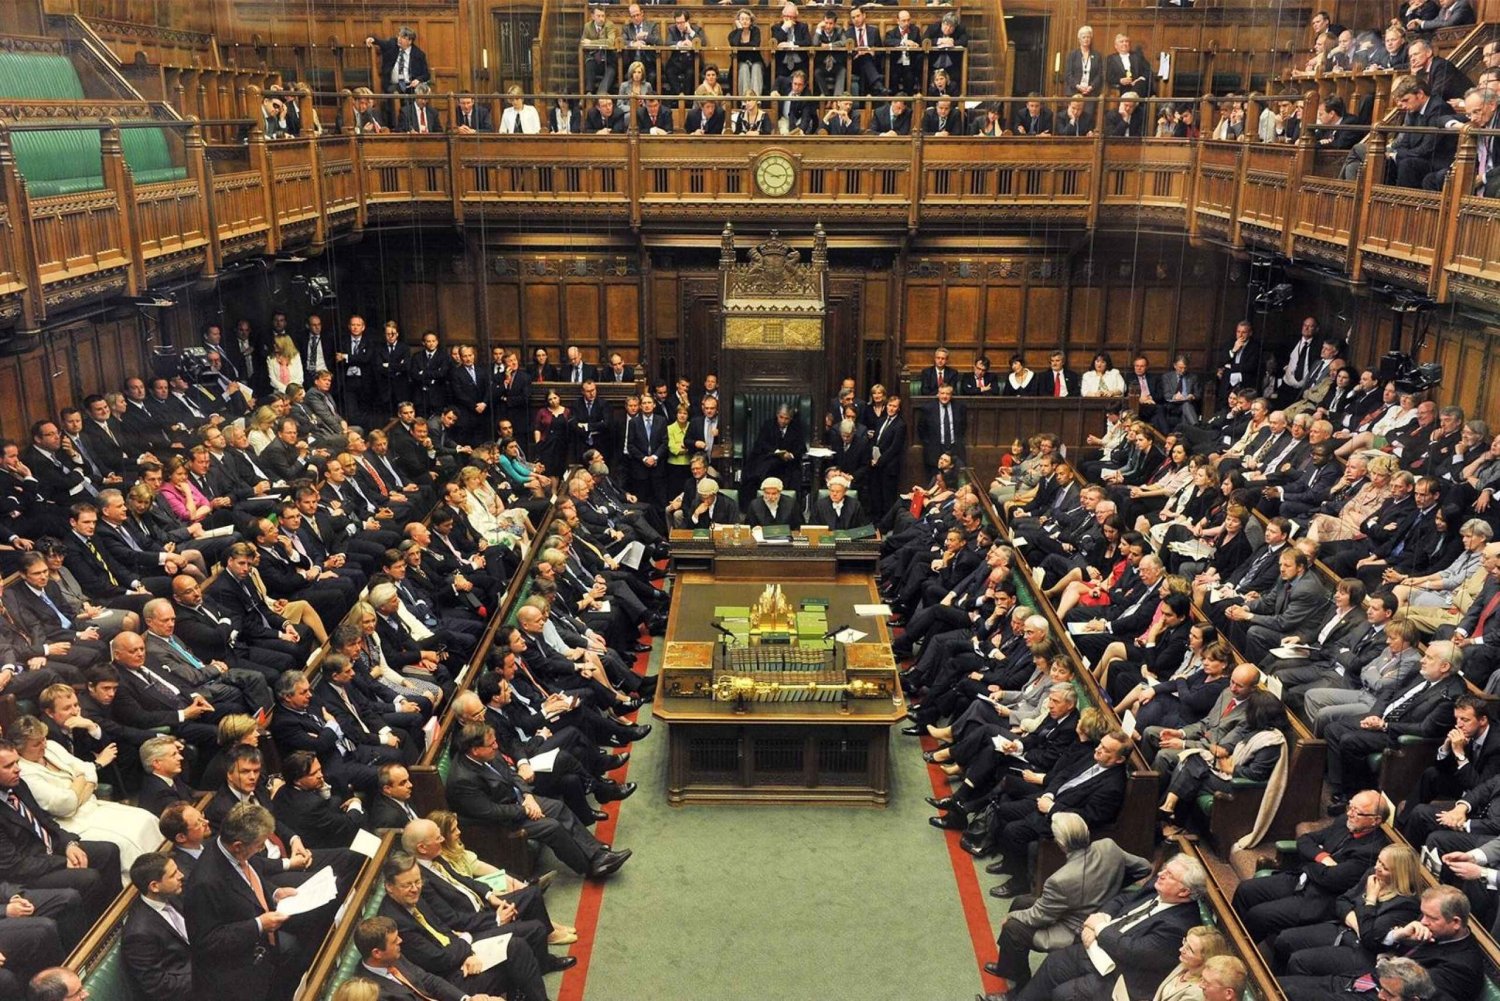 Bezoek de Houses of Parliament & 3 uur wandelen in Westminster